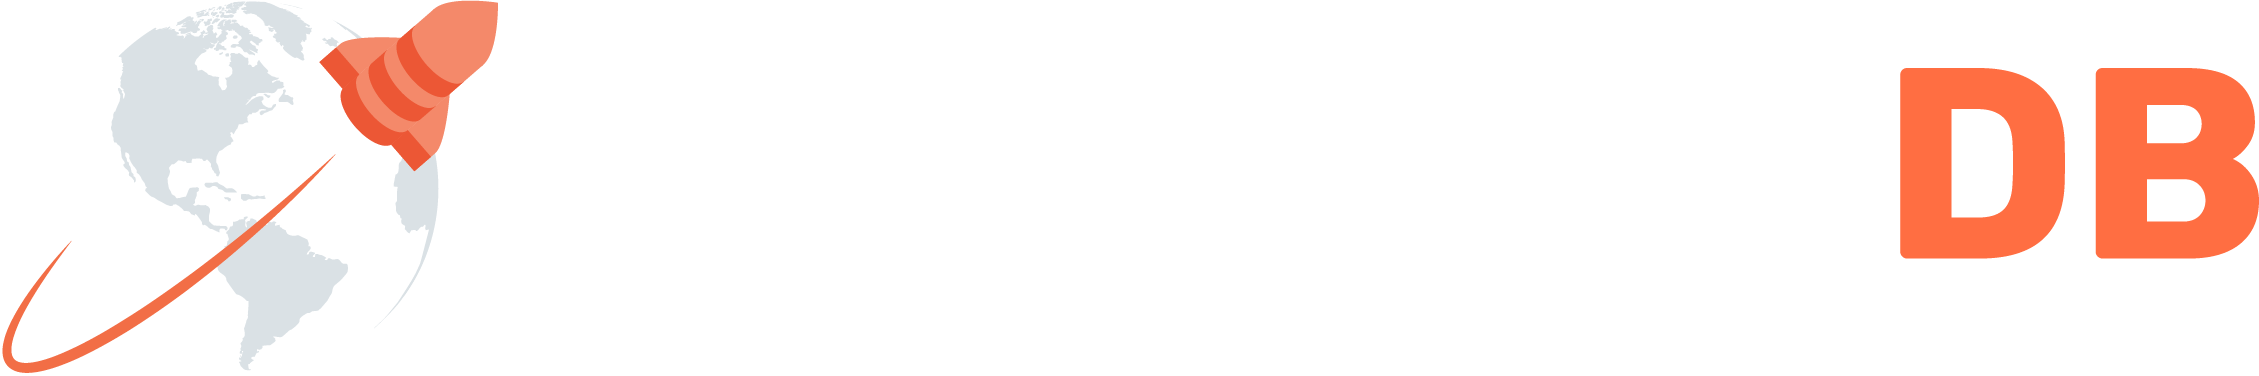 Yugabyte logo